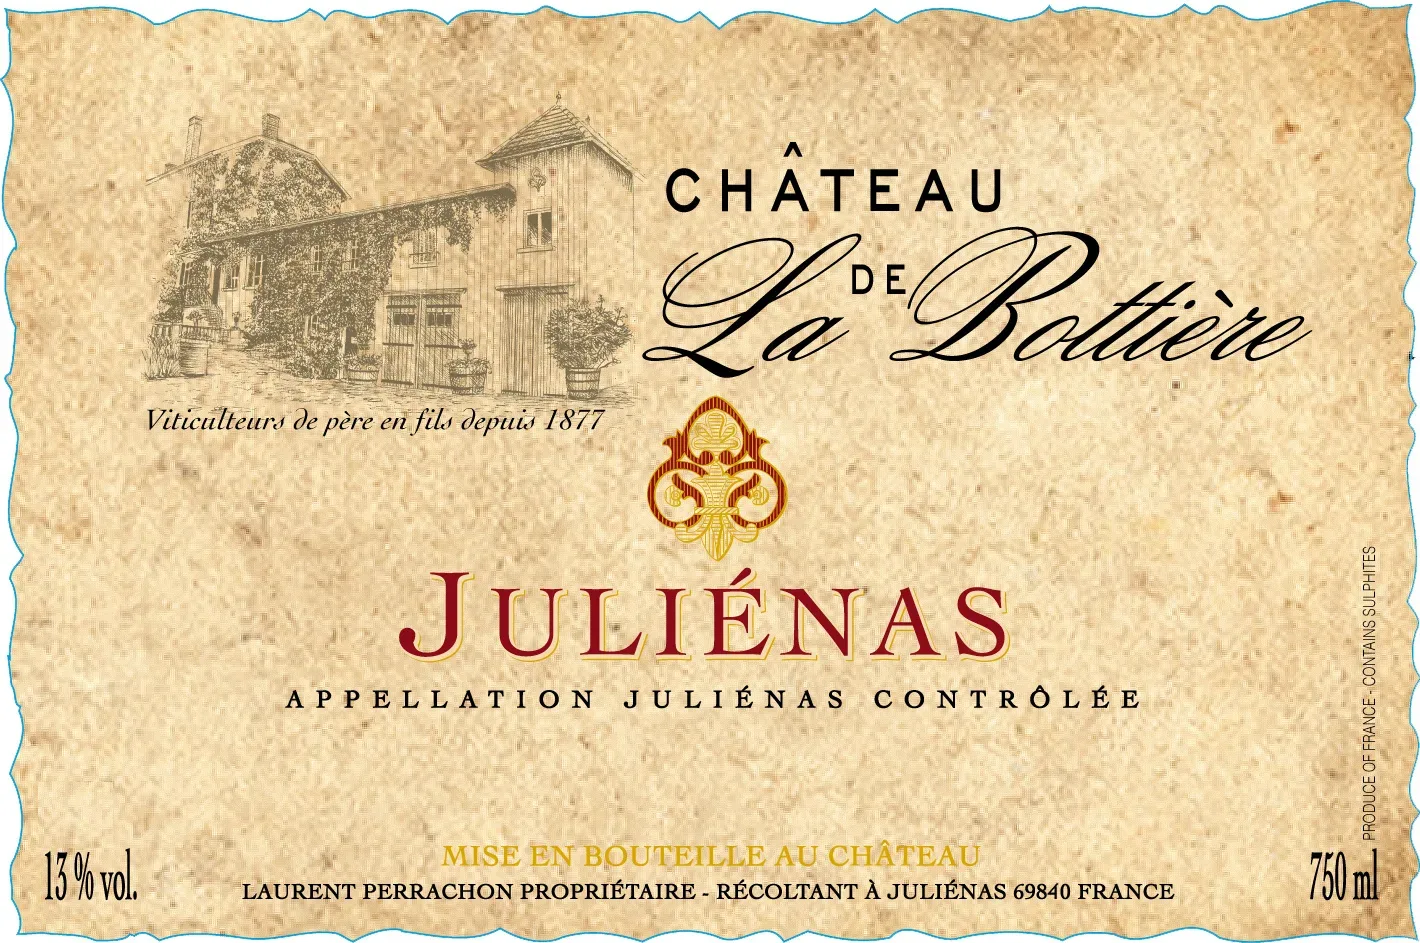 Chateau de La Bottiere Julienas front label